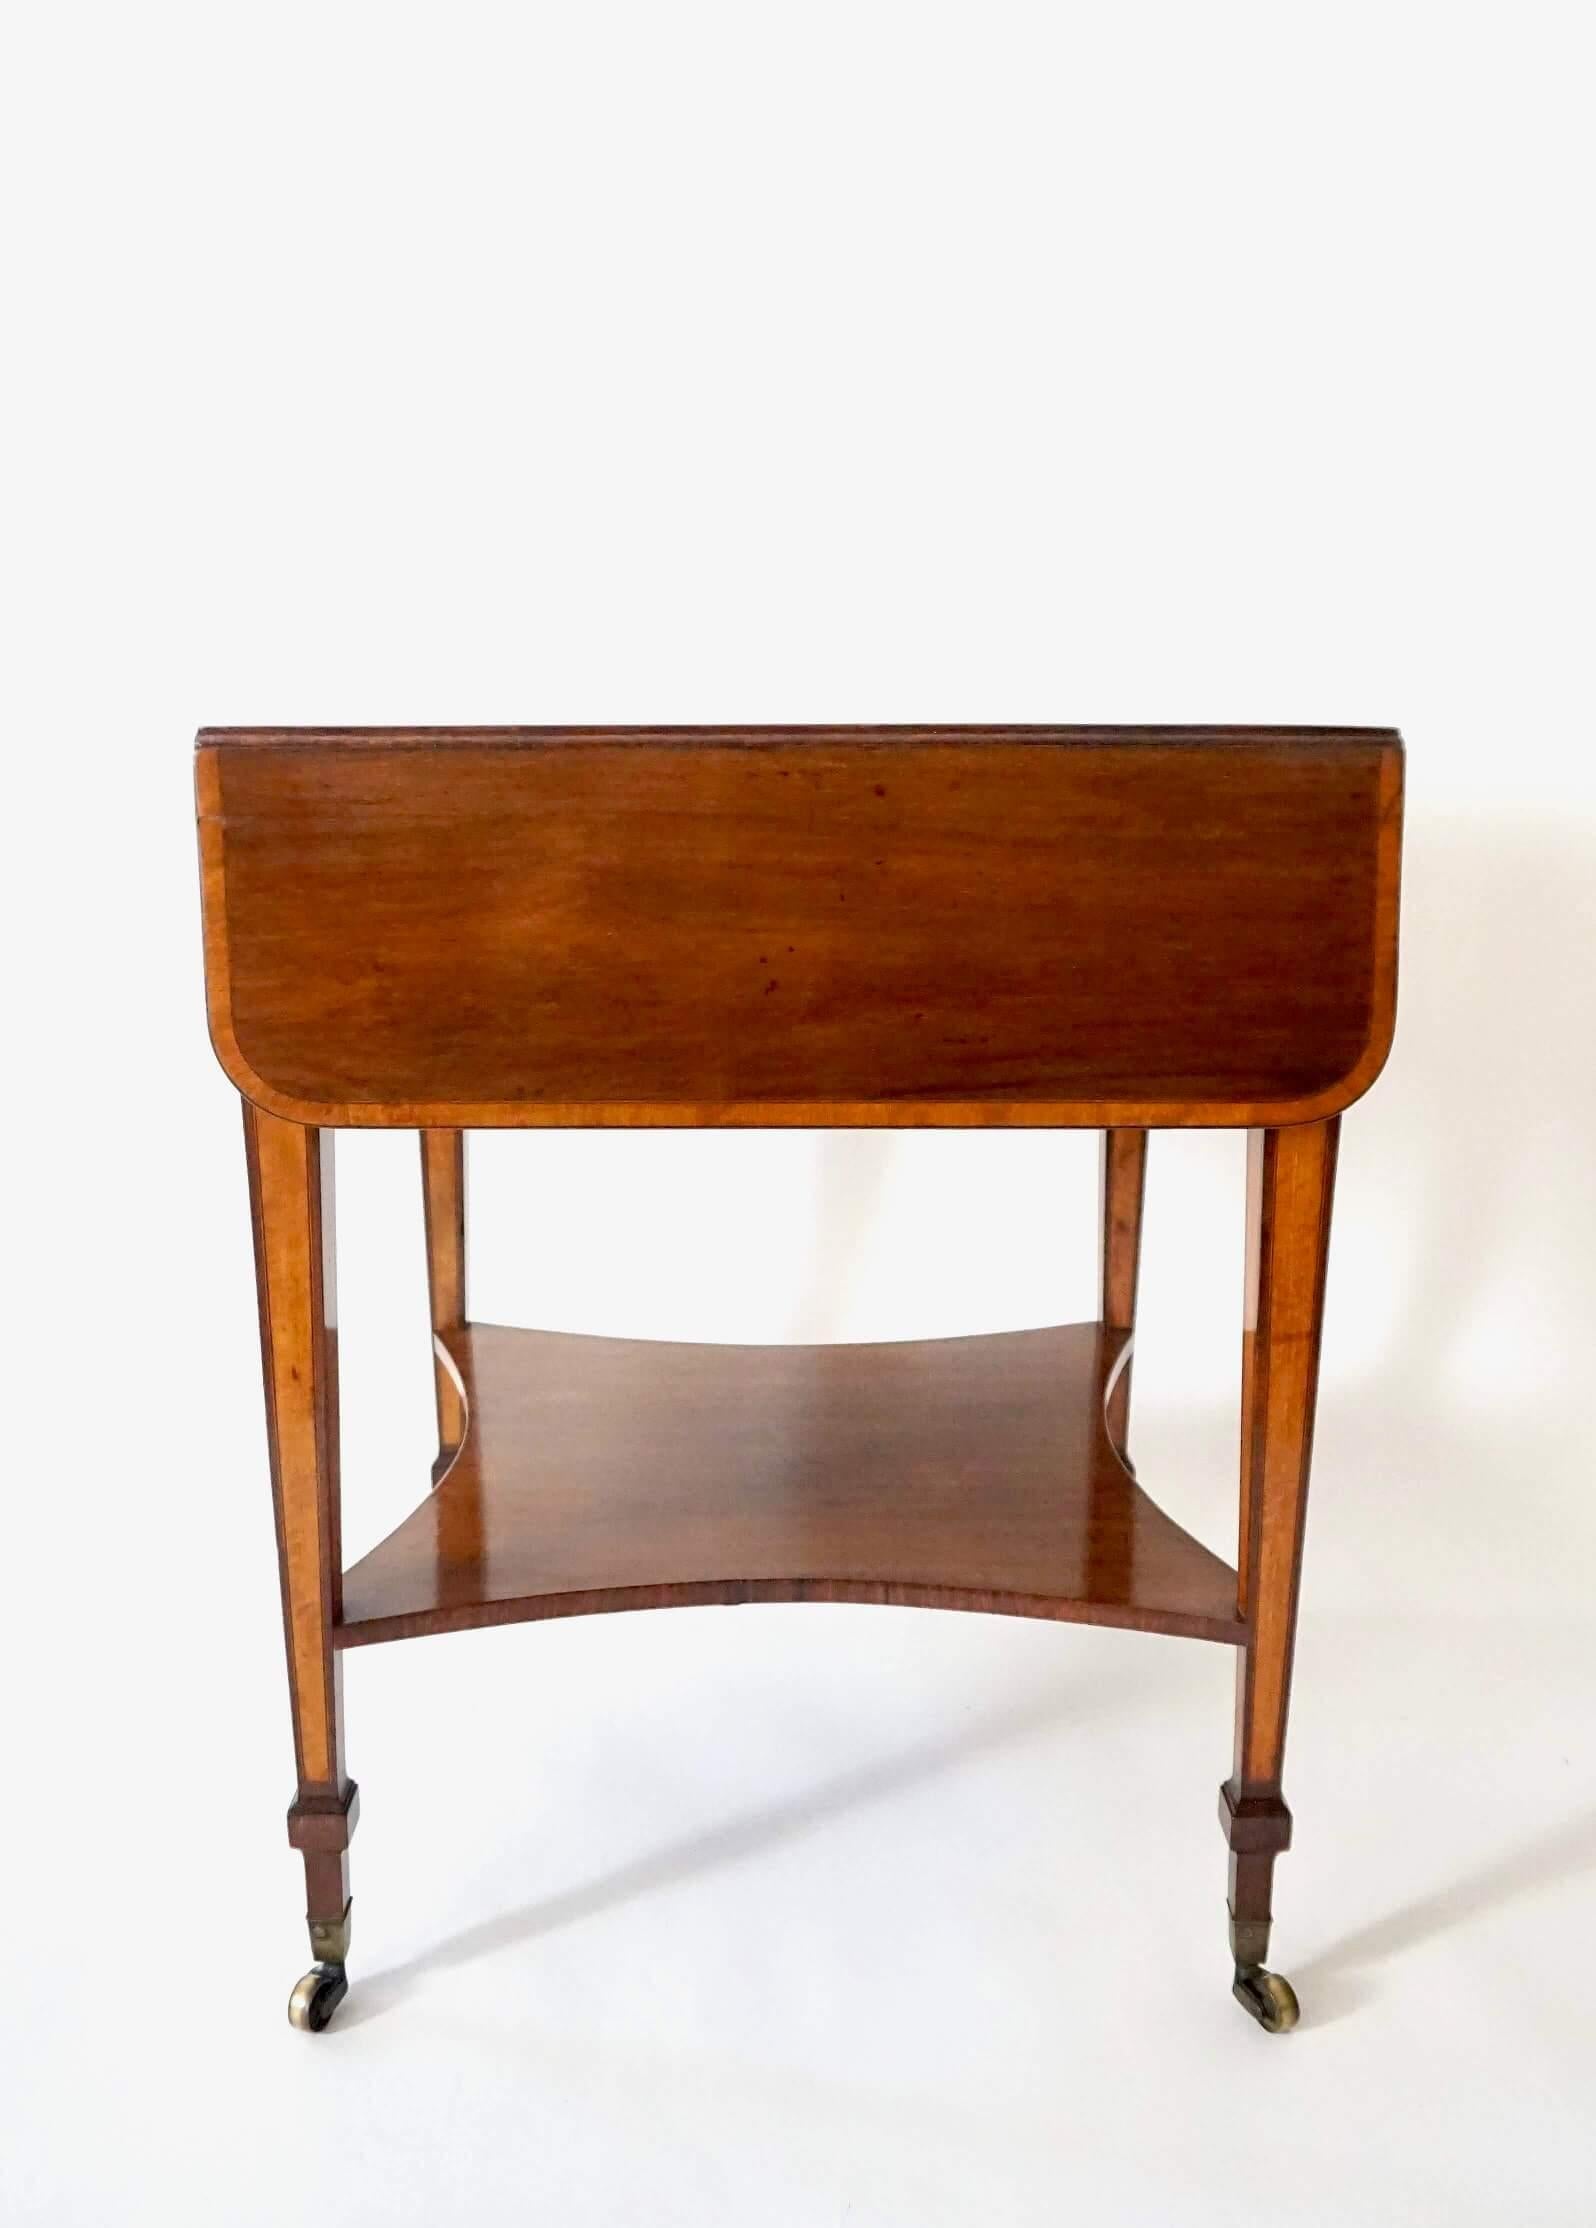 English George III Sheraton Rosewood & Satinwood Pembroke Table, circa 1800 For Sale 1